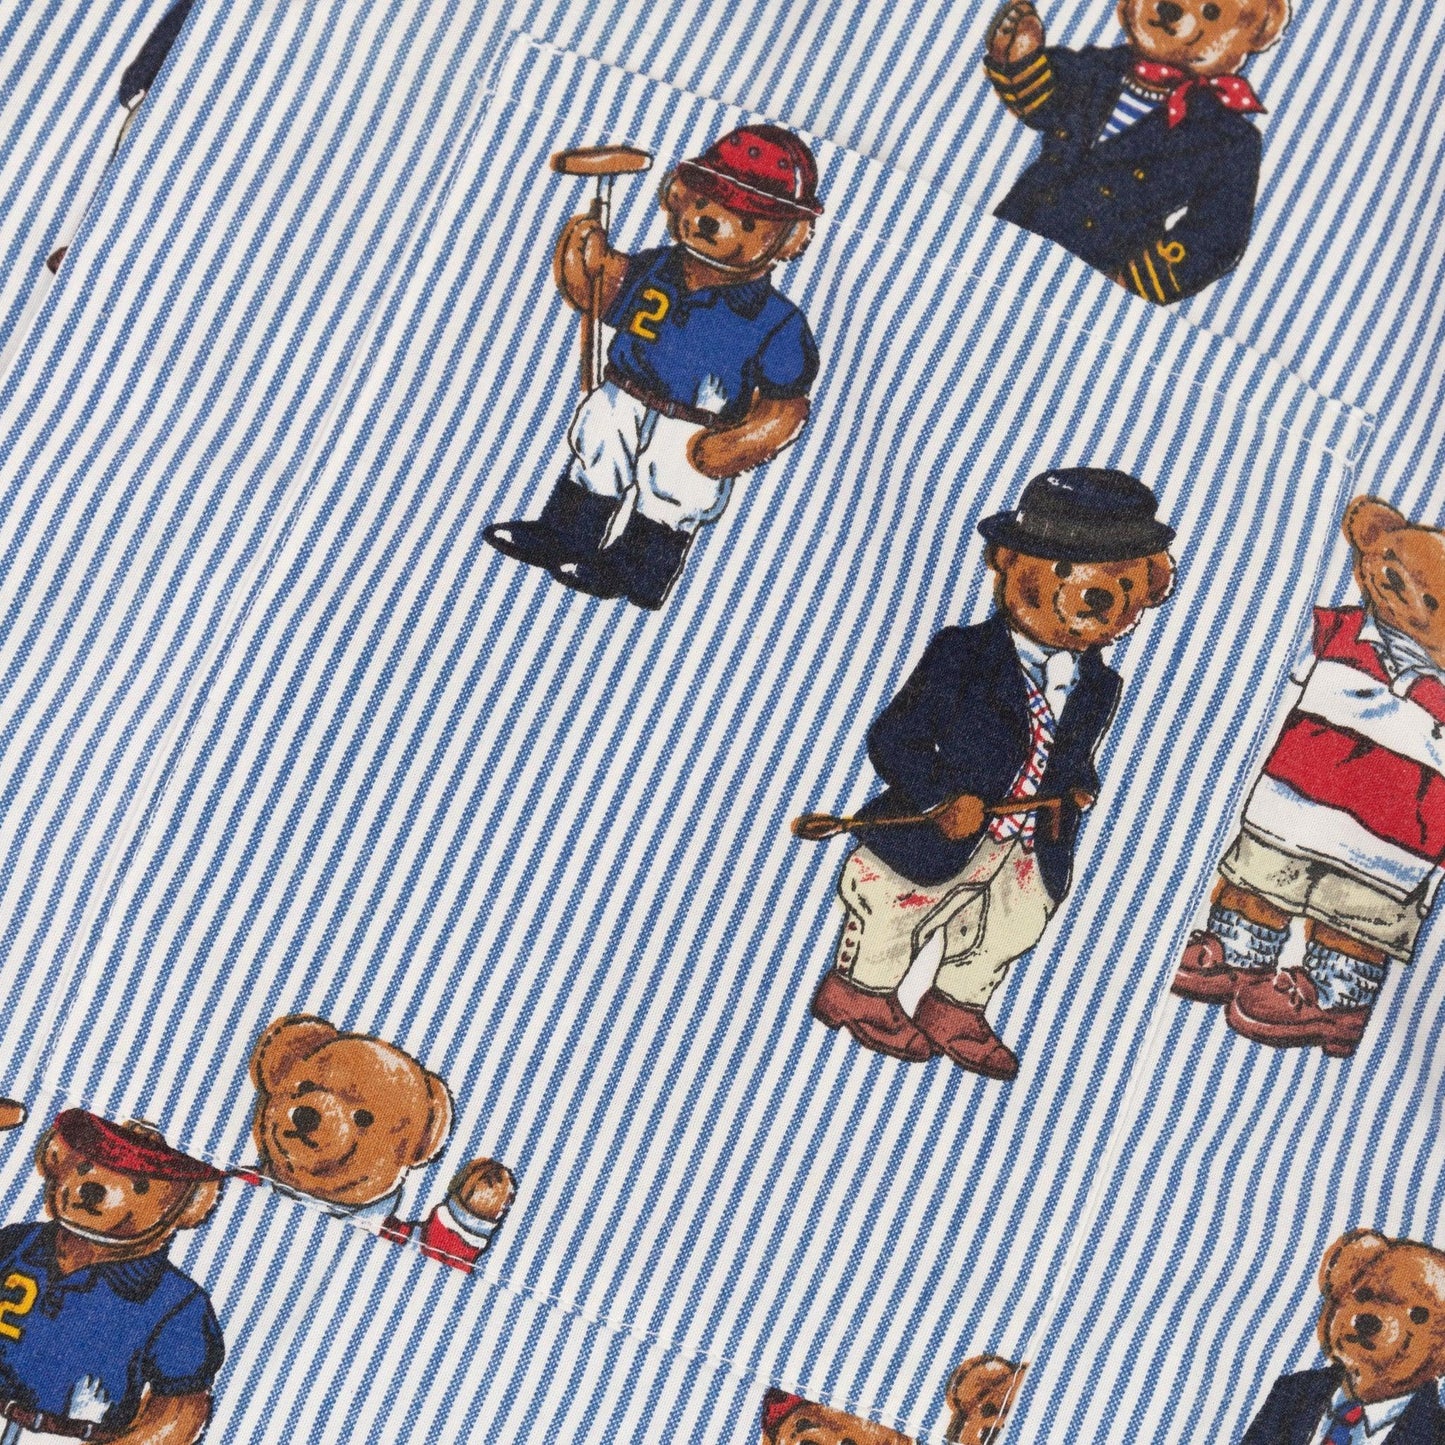 VT Rework : The Polo Bear Ralph Lauren Cuban Shirt - Known Source